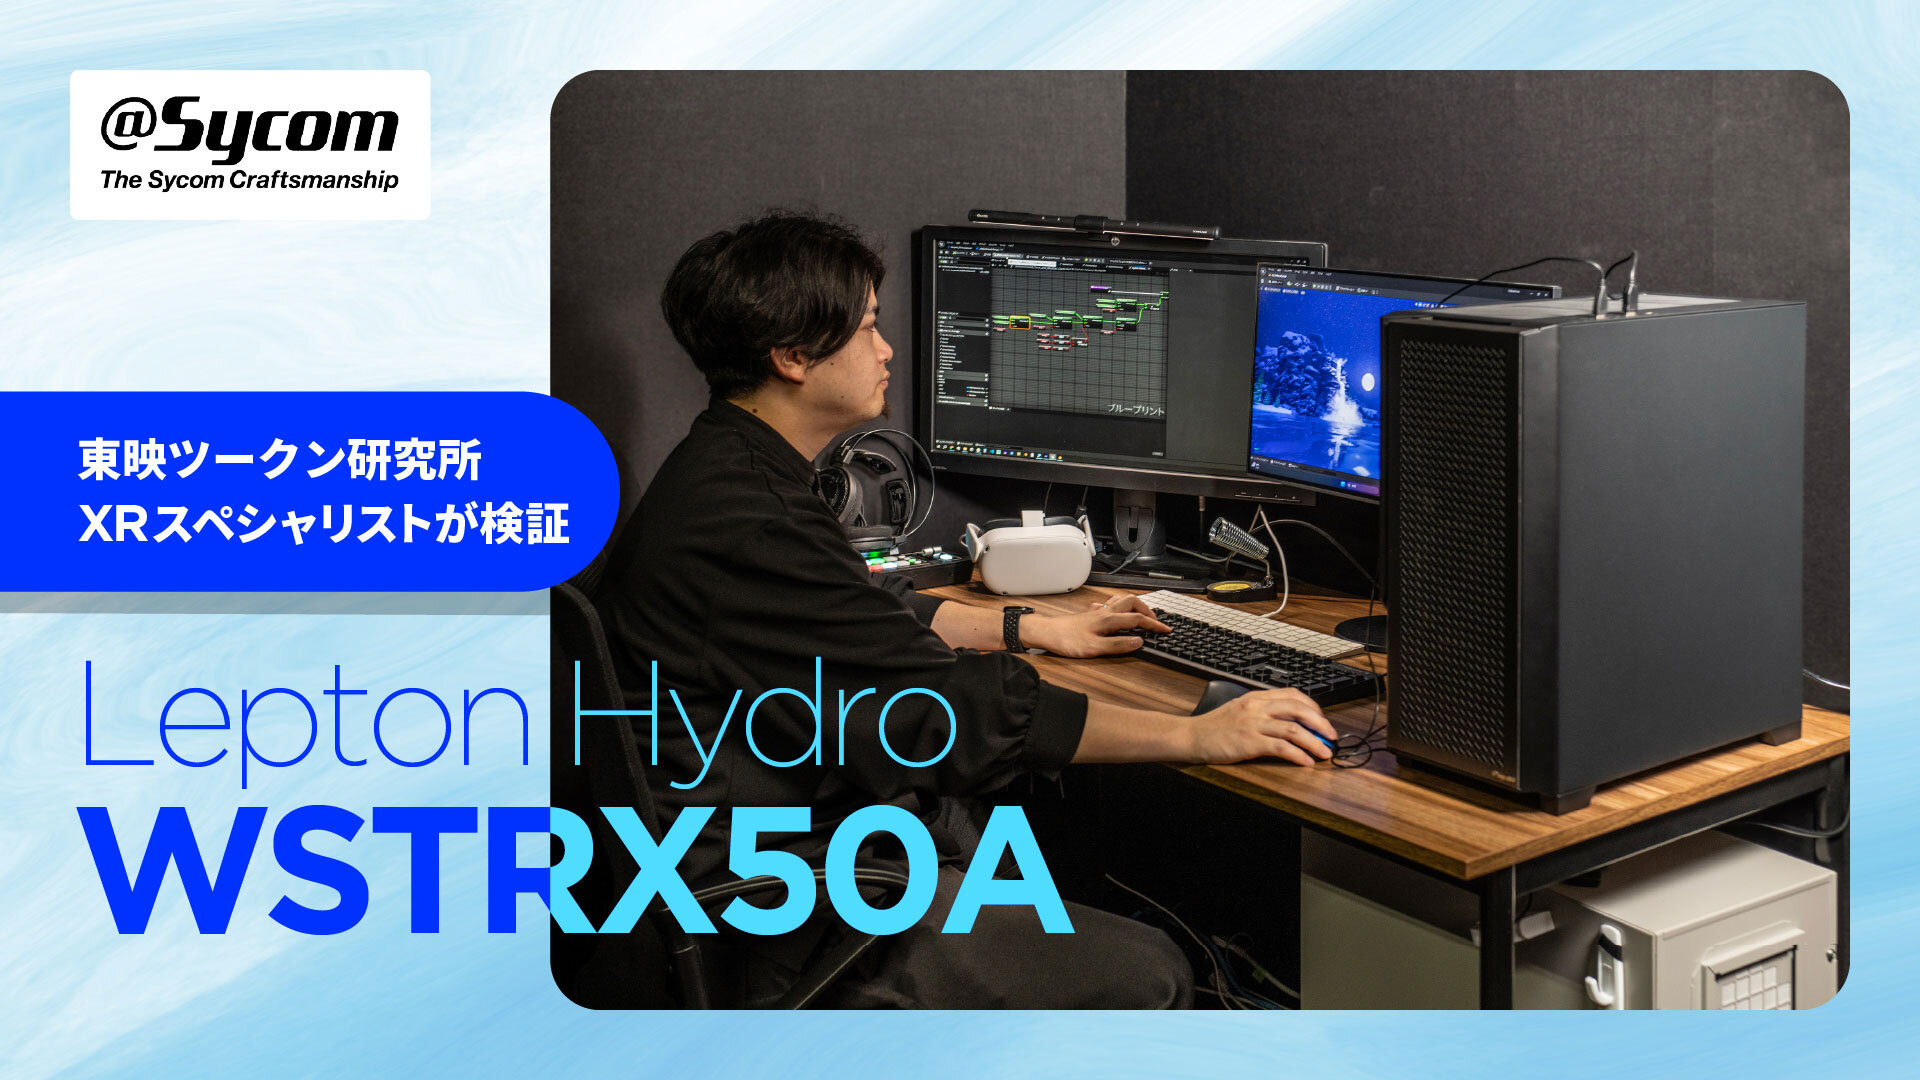 先端のリアルタイムコンテンツ制作でも真価を発揮！東映ツークン研究所のディレクターによるサイコムのデュアル水冷ワークステーション「Lepton Hydro WSTRX50A」レビュー